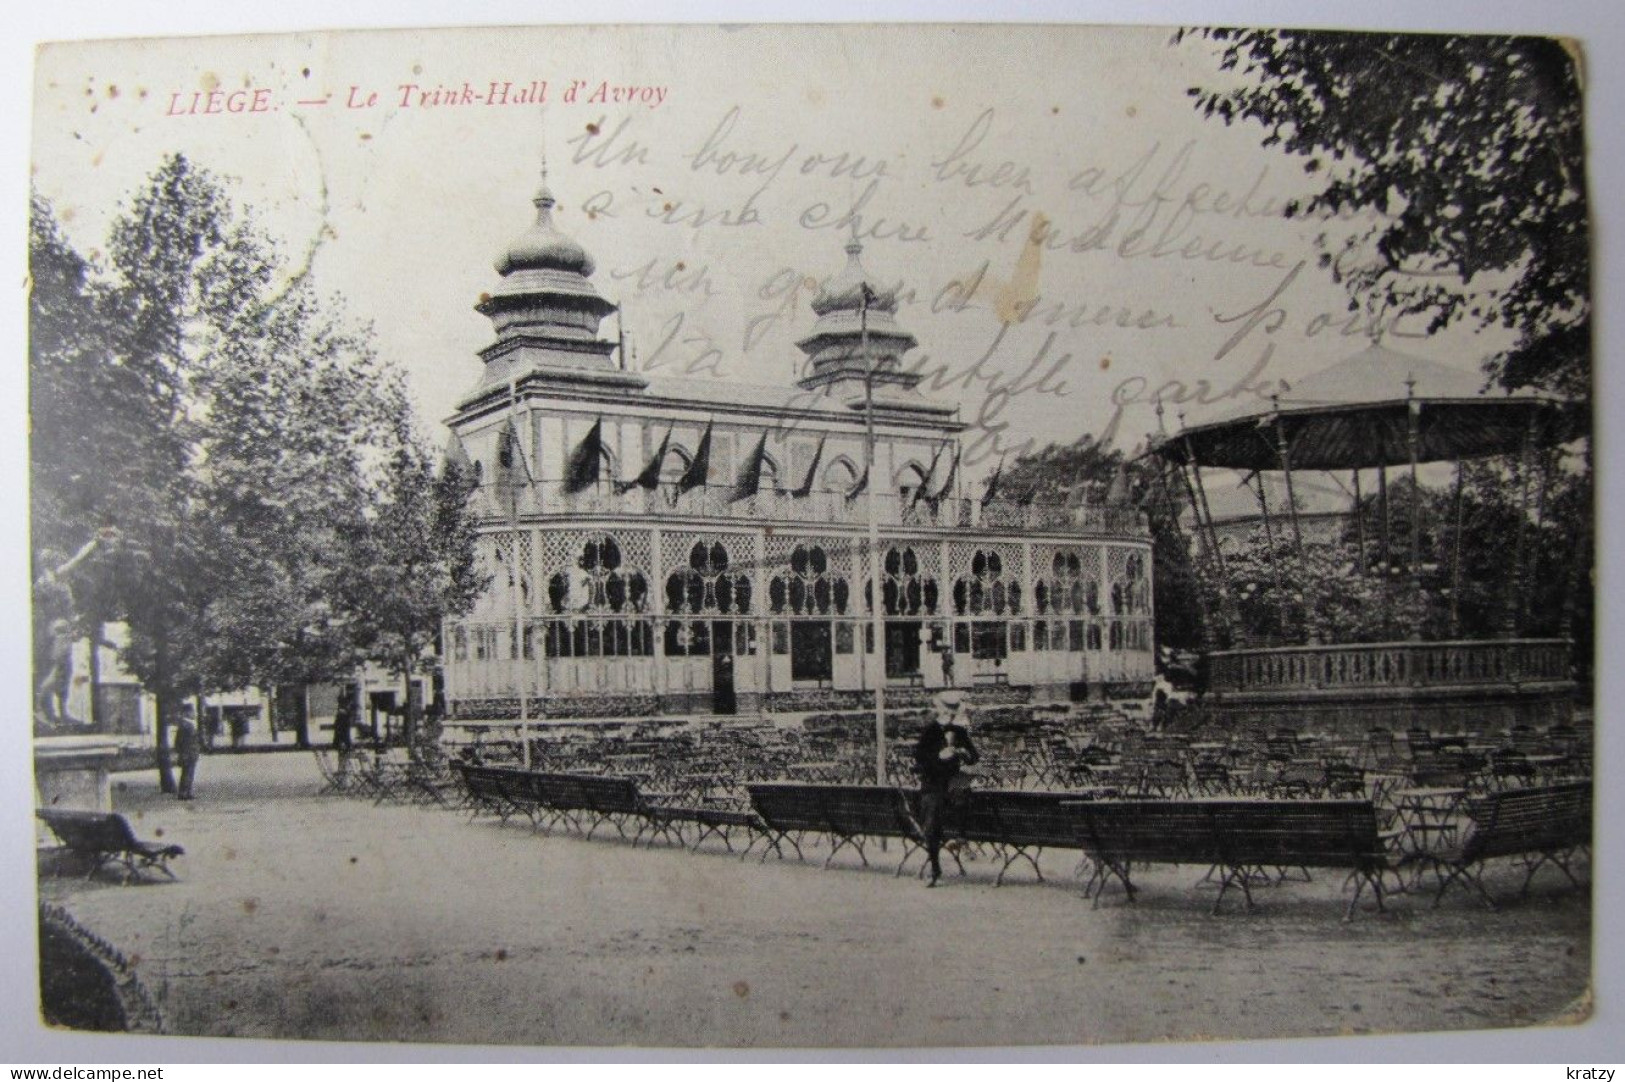 BELGIQUE - LIEGE - VILLE - Le Trink-Hall D'Avroy - 1905 - Lüttich